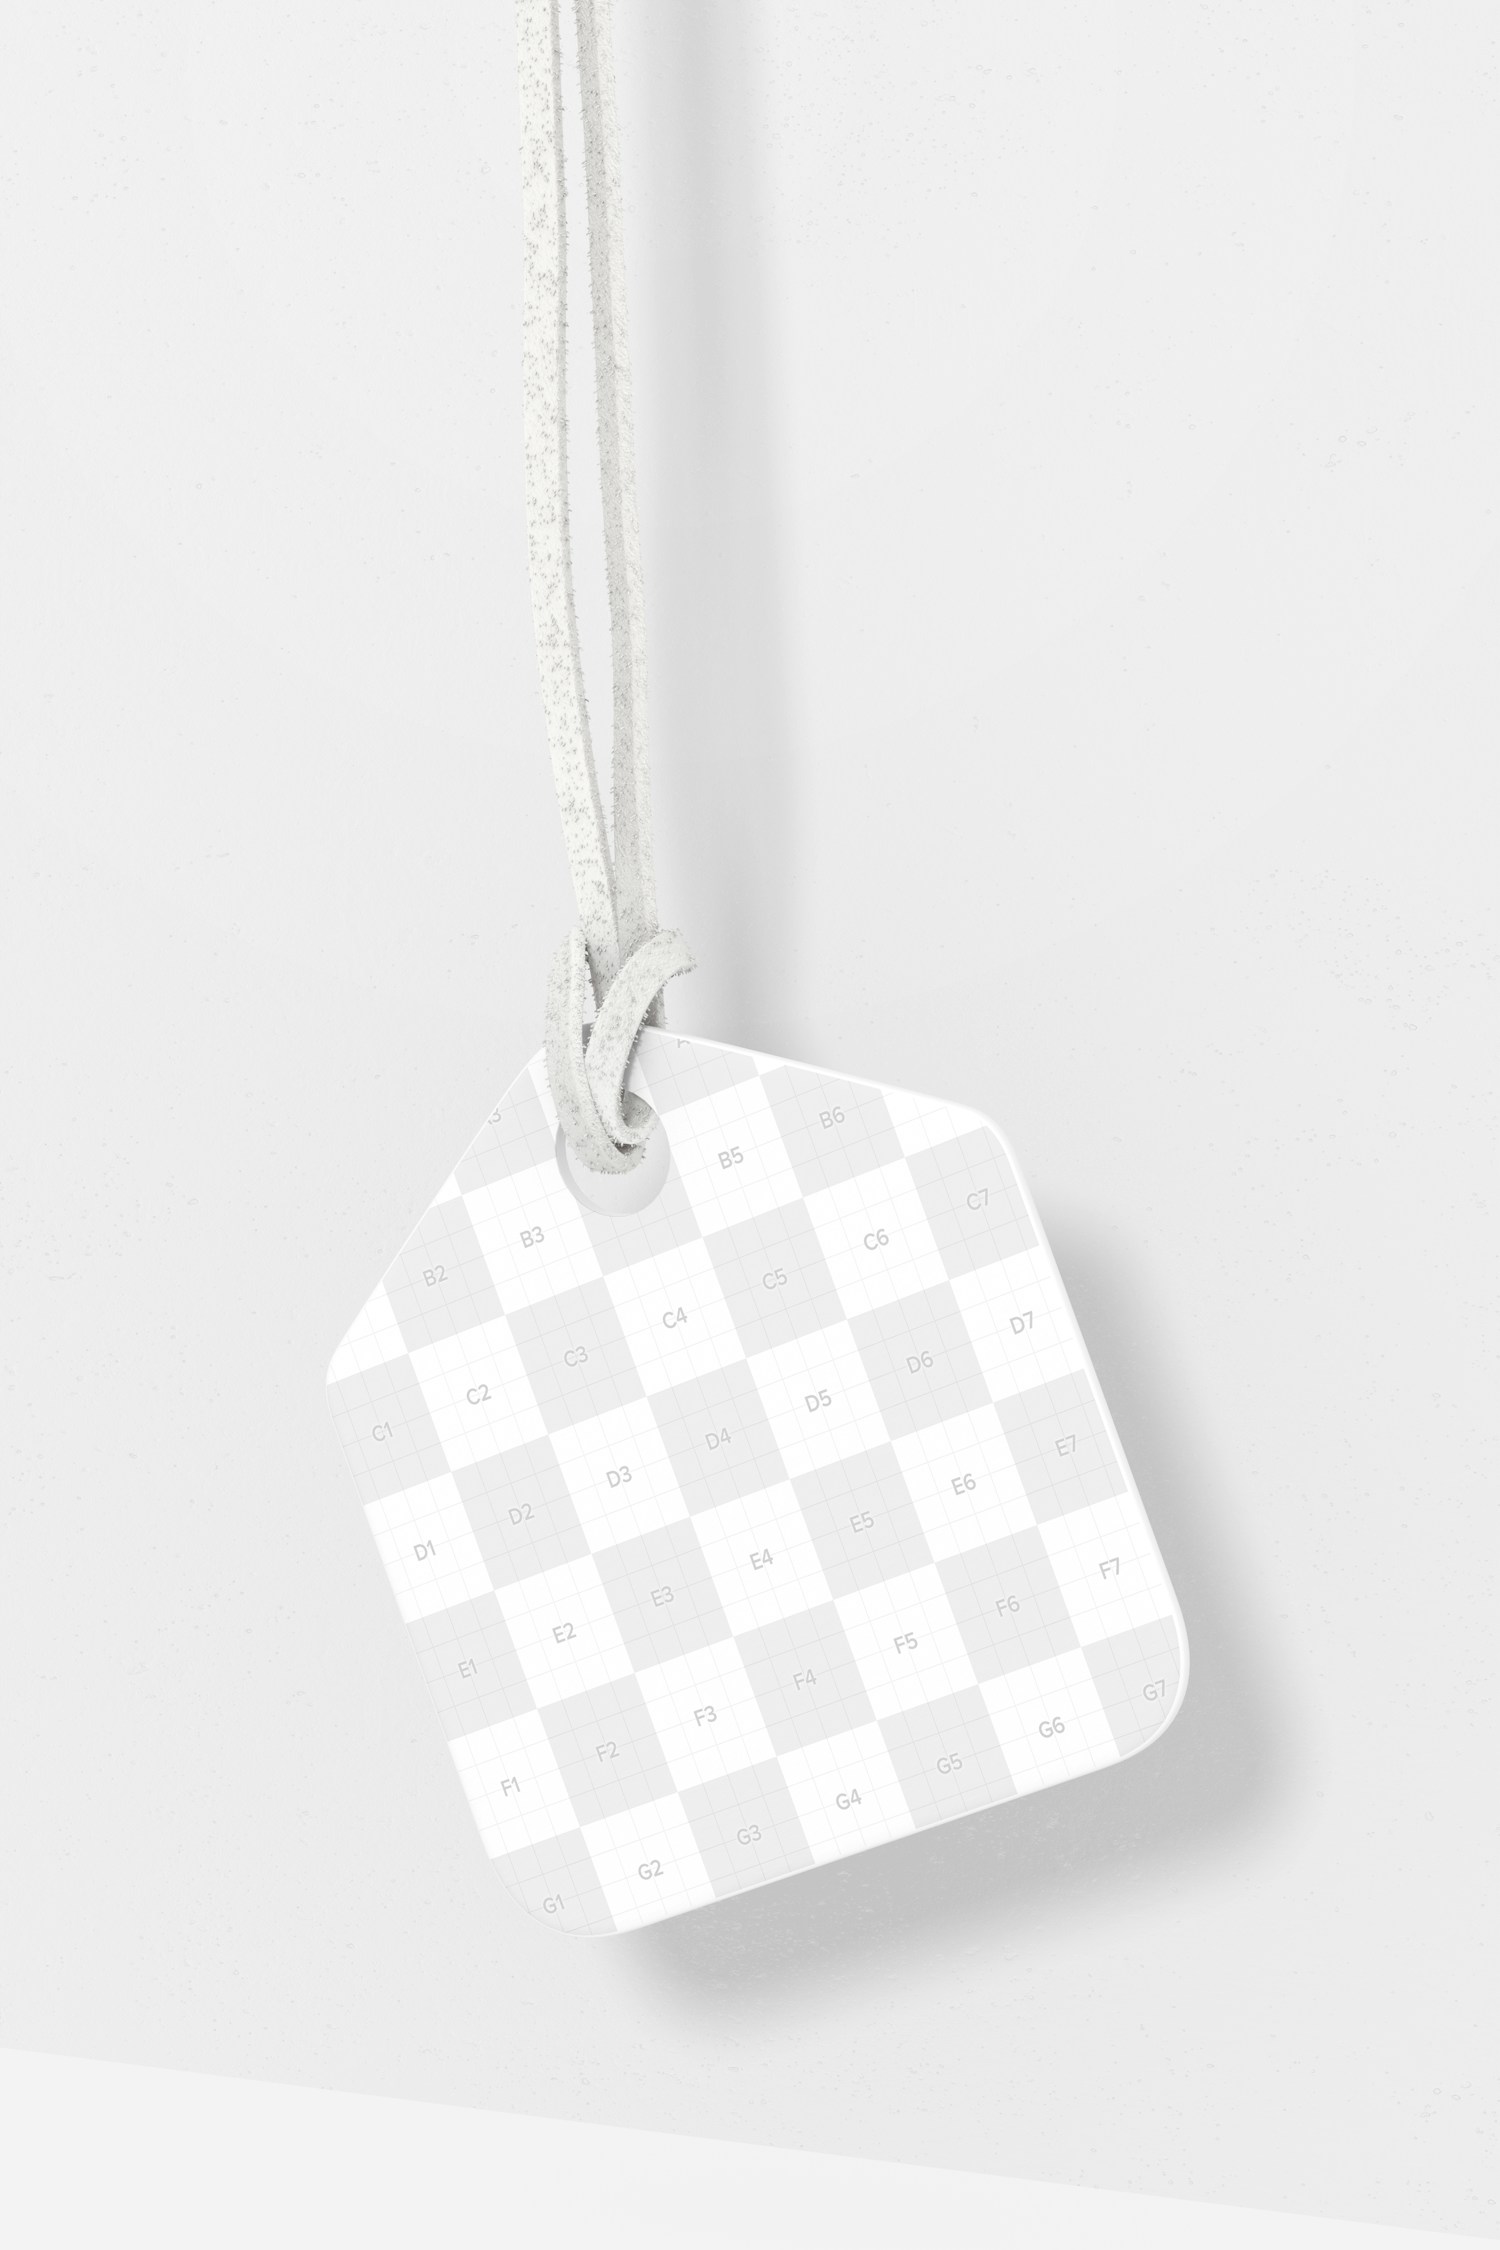 Maqueta de Etiqueta Pentagonal de Cartón, Colgando